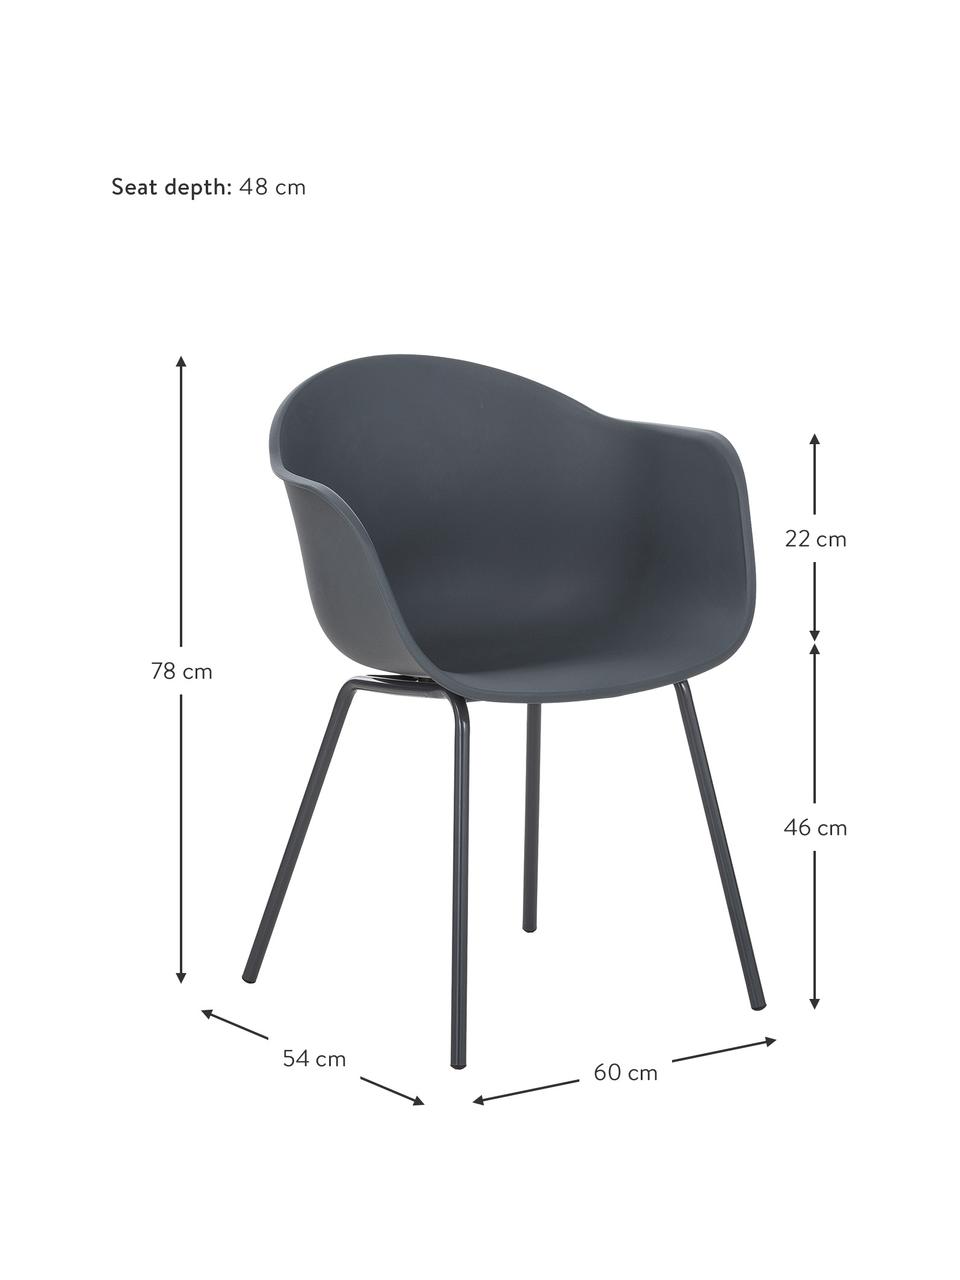 Kunststoff-Armlehnstuhl Claire mit Metallbeinen, Sitzschale: Kunststoff, Beine: Metall, pulverbeschichtet, Grau, B 60 x T 54 cm